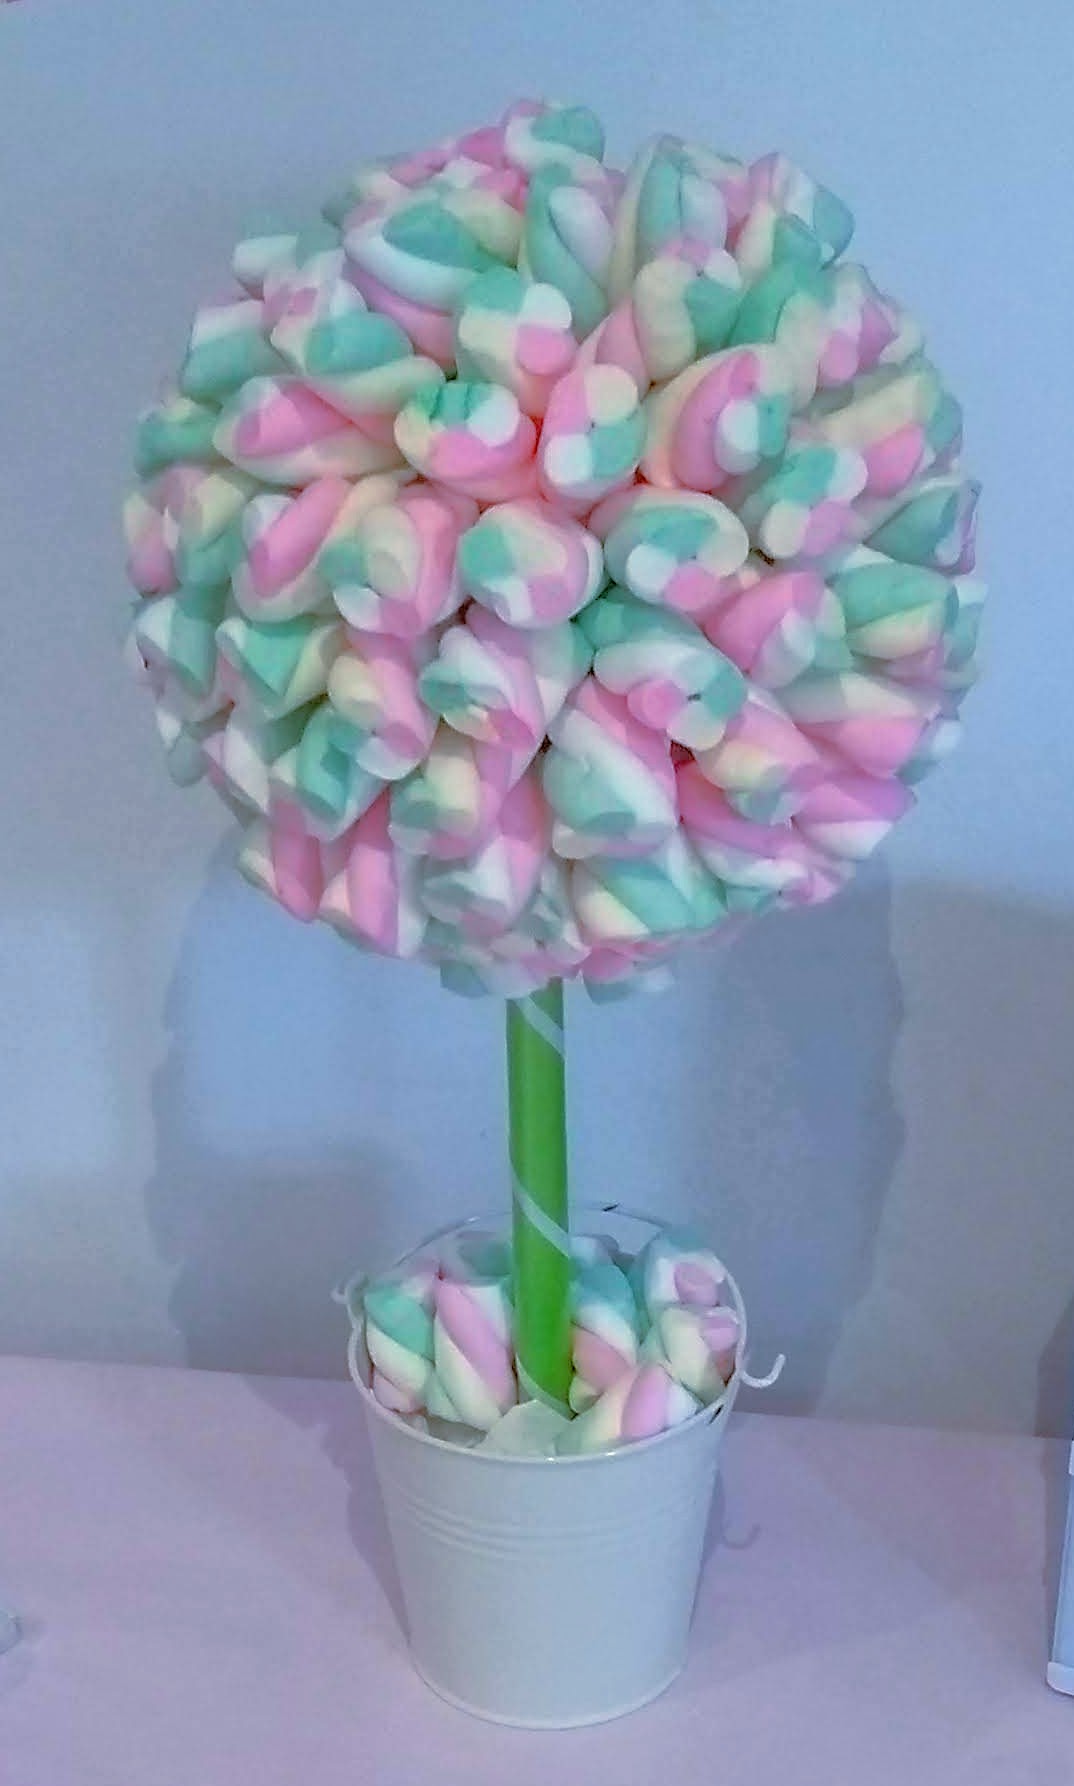 Buy Marshmallow Twist Sweet Tree best online seller in UK